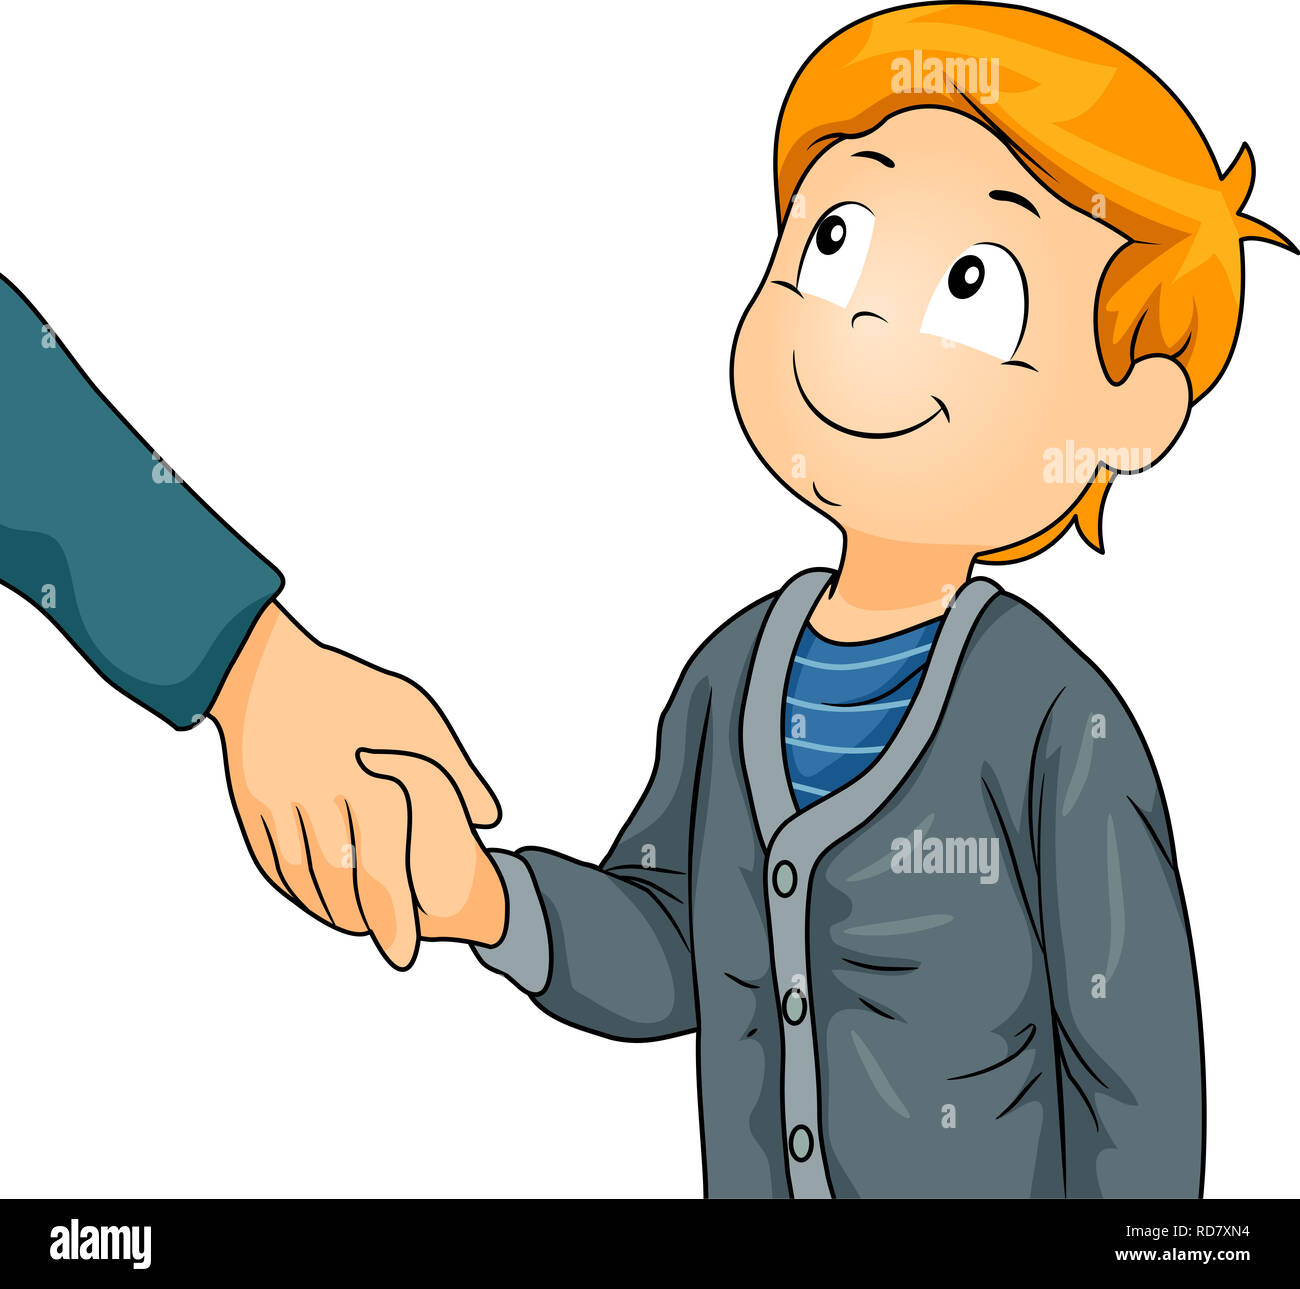 Ilustración de un niño chico estrechando la mano de un adulto como saludo  Fotografía de stock - Alamy